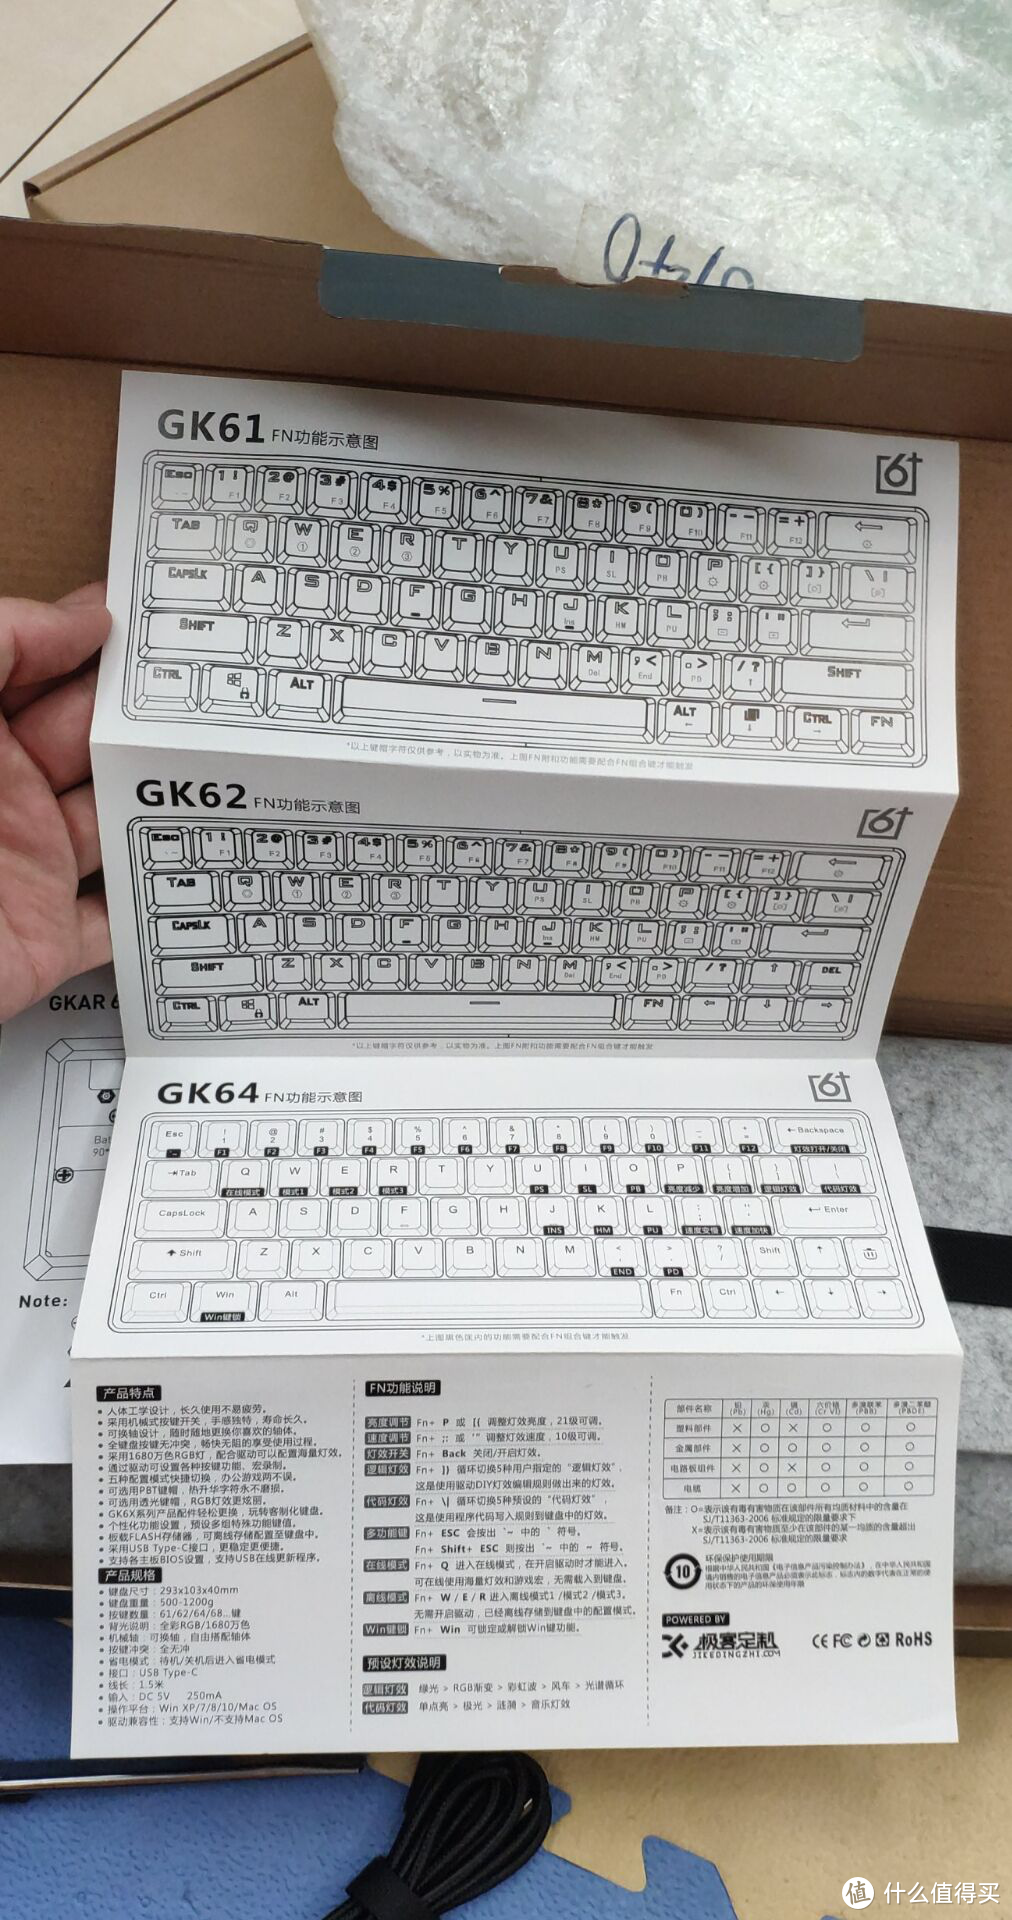 来自极客定制的客制化机械键盘gk61简评